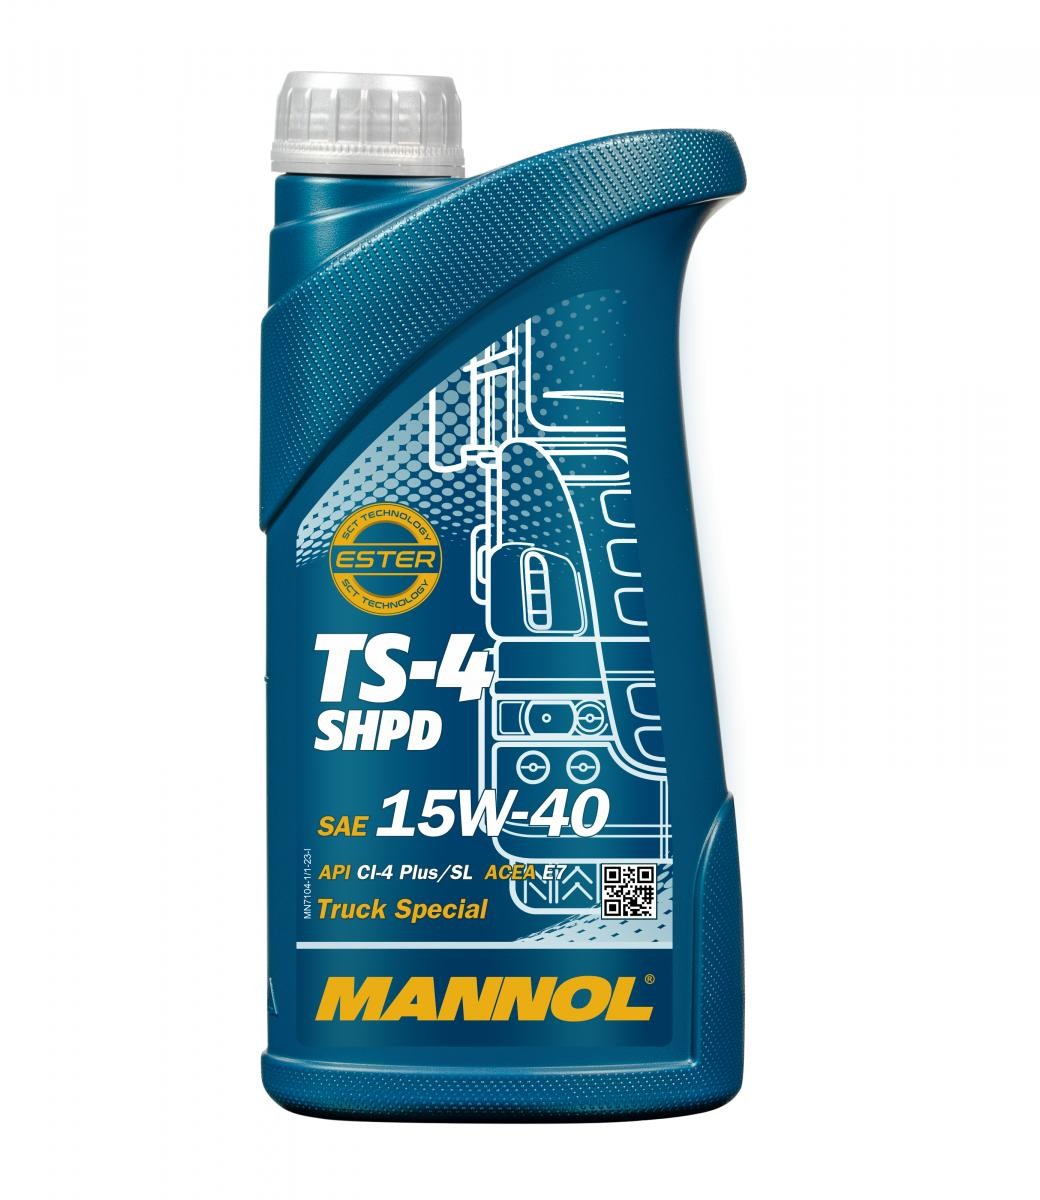 Auto oil API CG-4 MANNOL - MN7104-1 TS-4, SHPD